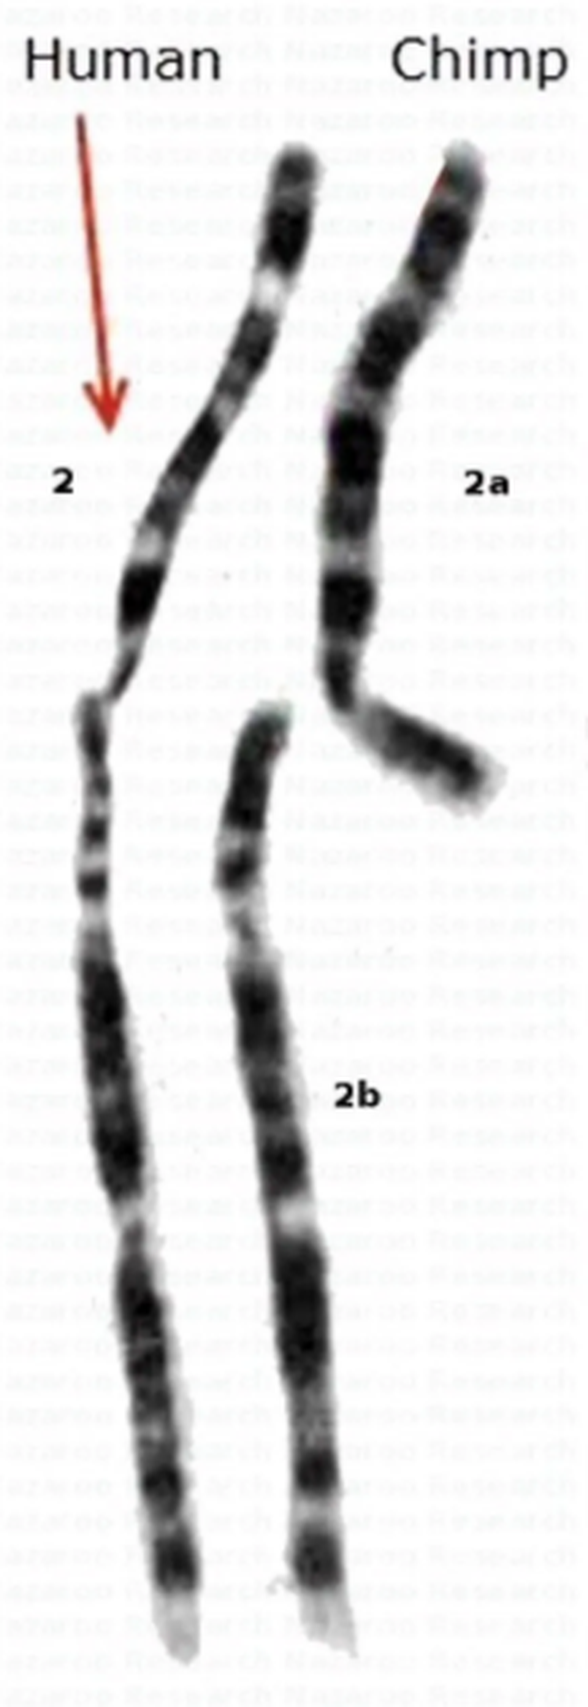 İnsanda bulunan 2.Kromozom ve şempazede bulan 2A ve 2B kromozmları.